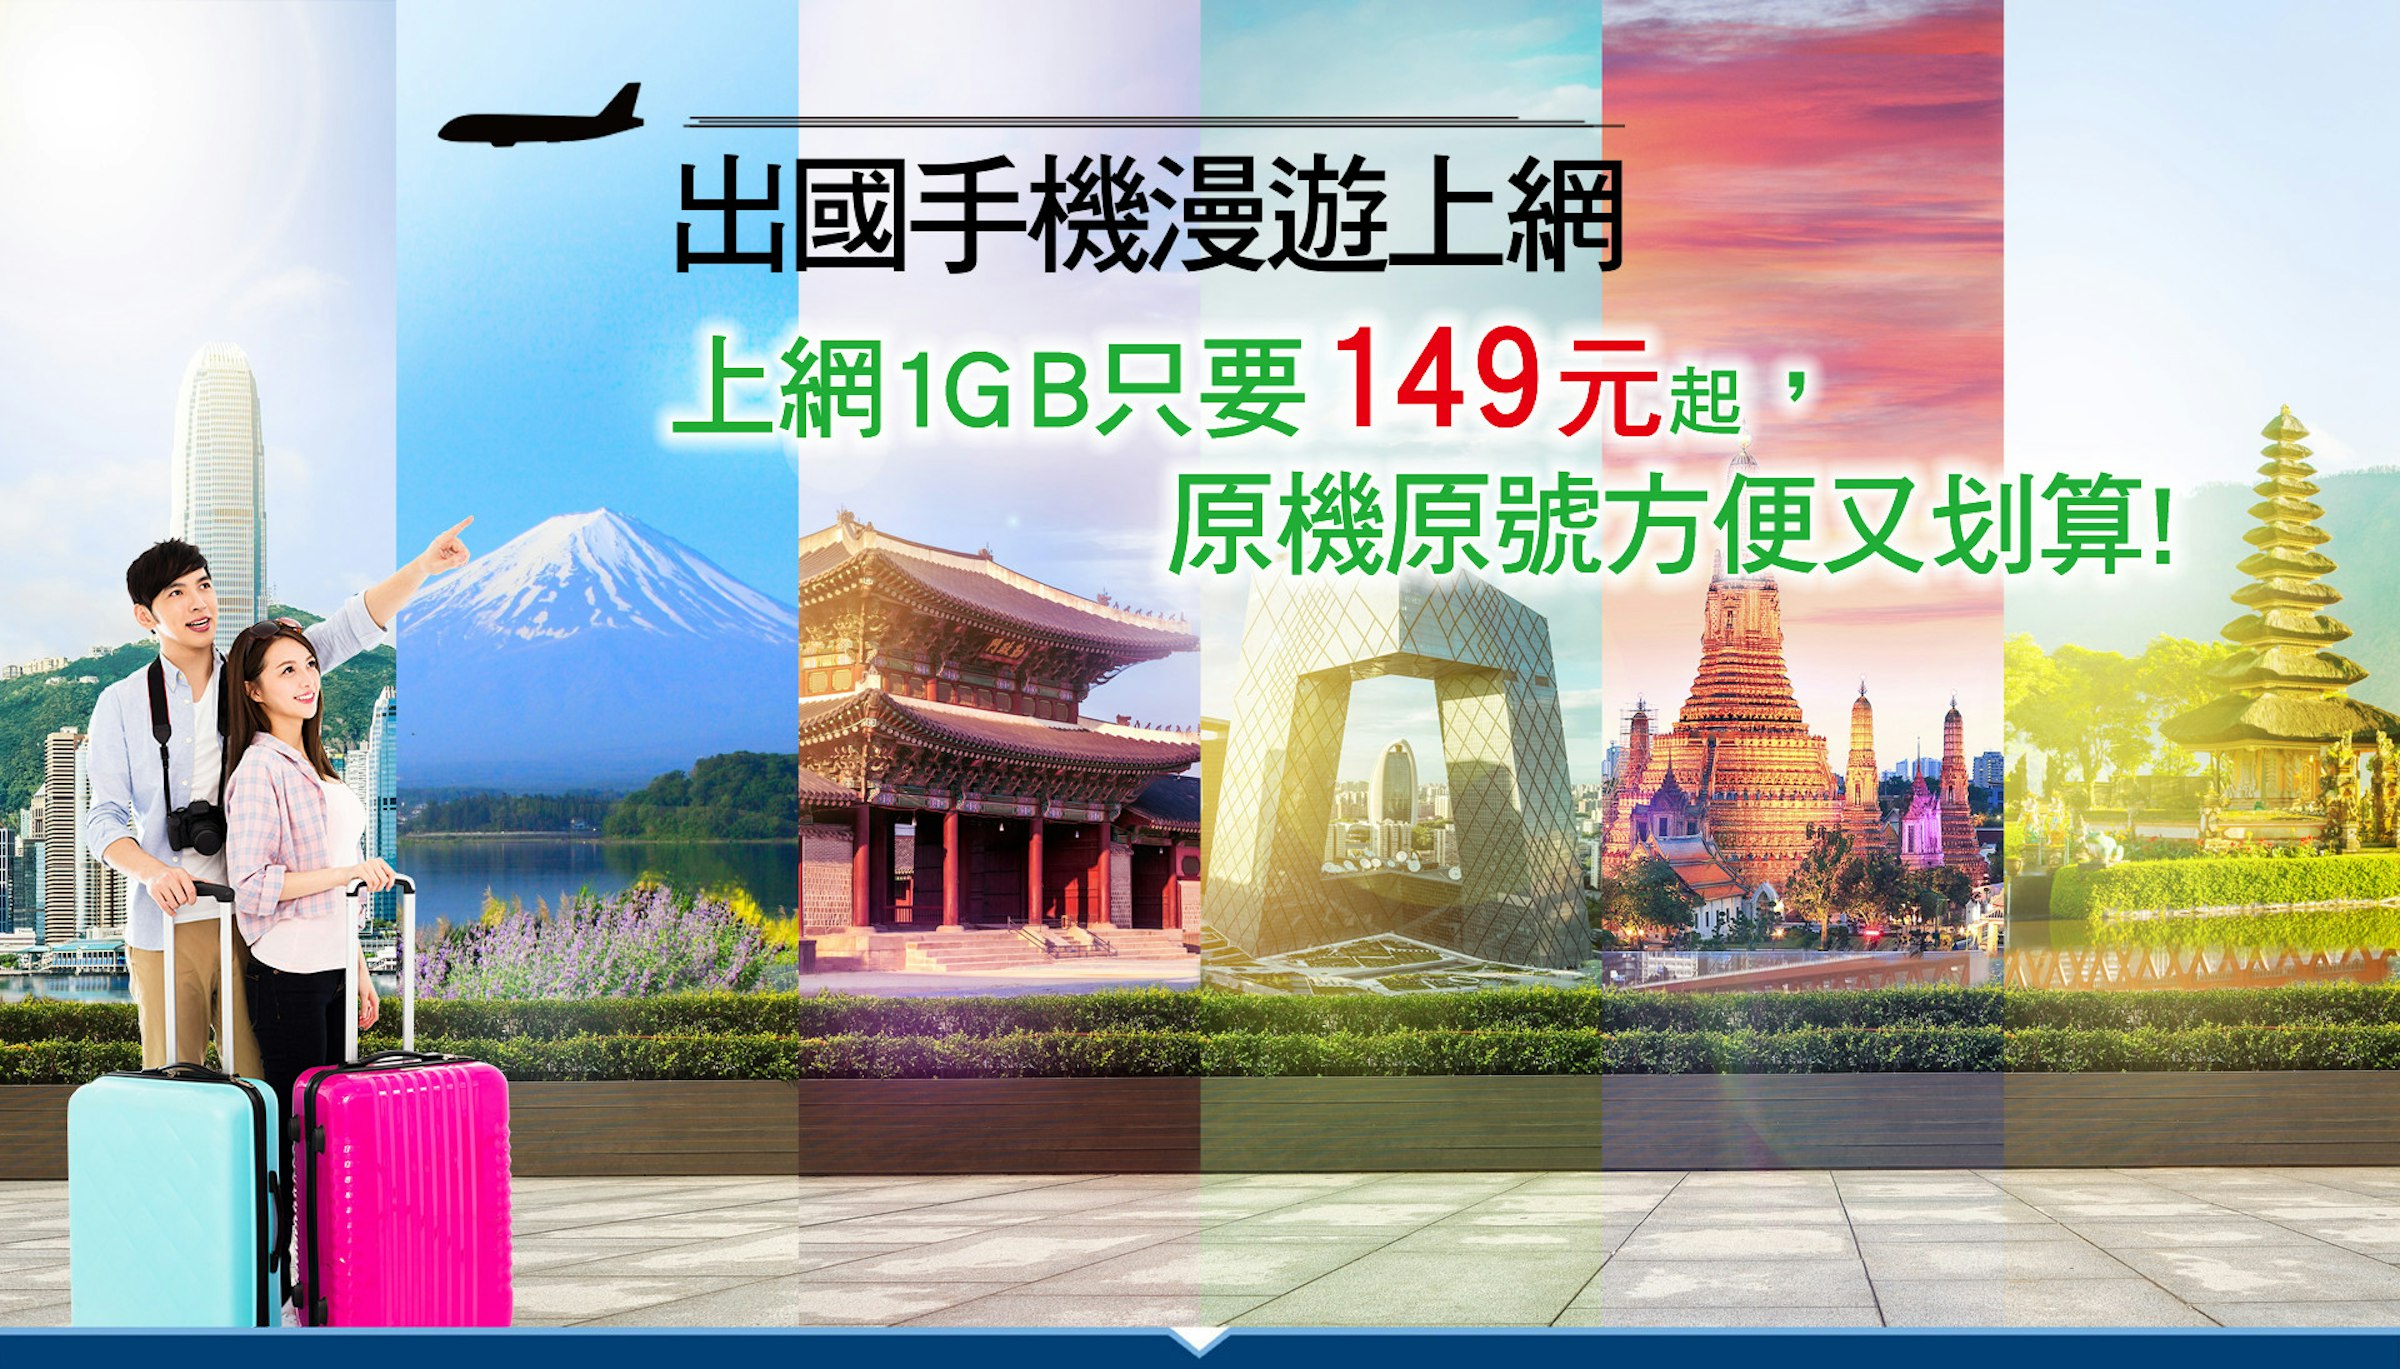 中華電信推日本 韓國 香港 澳門漫遊優惠7天1gb特價149元 137701 Cool3c